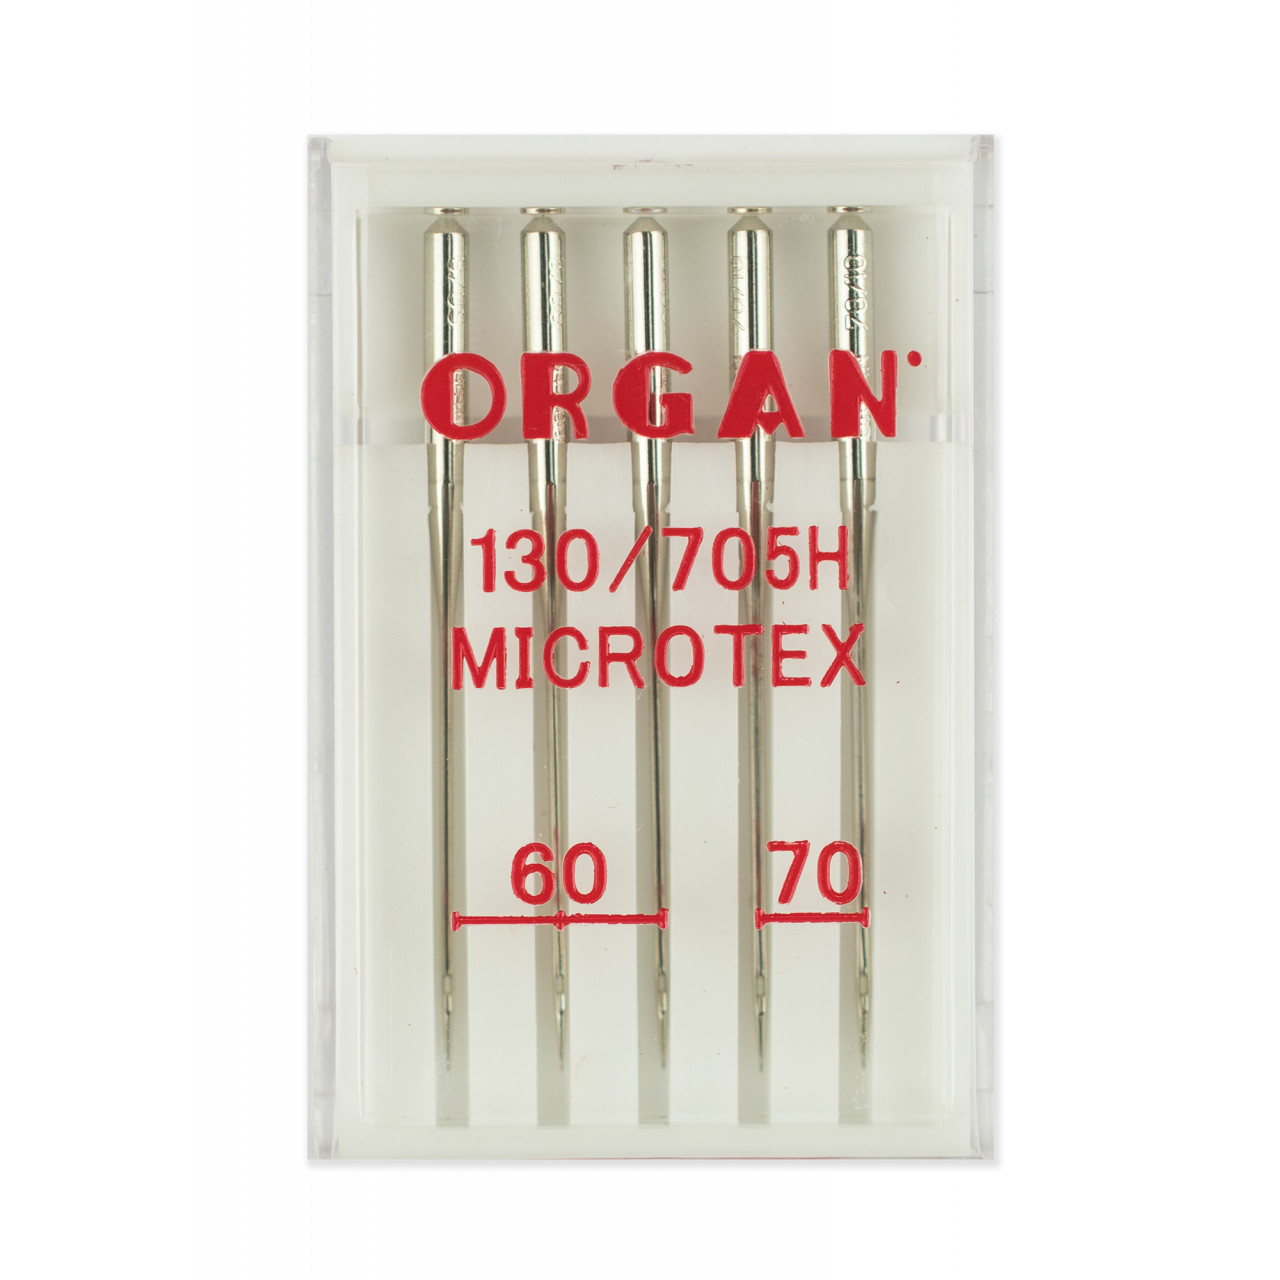 Супер стрейч. Иглы орган микротекс 60-70. Иглы Organ микротекс 5/60-70. Иглы Organ Microtex №60 - 70. Игла для швейной машины Organ 130/705h.